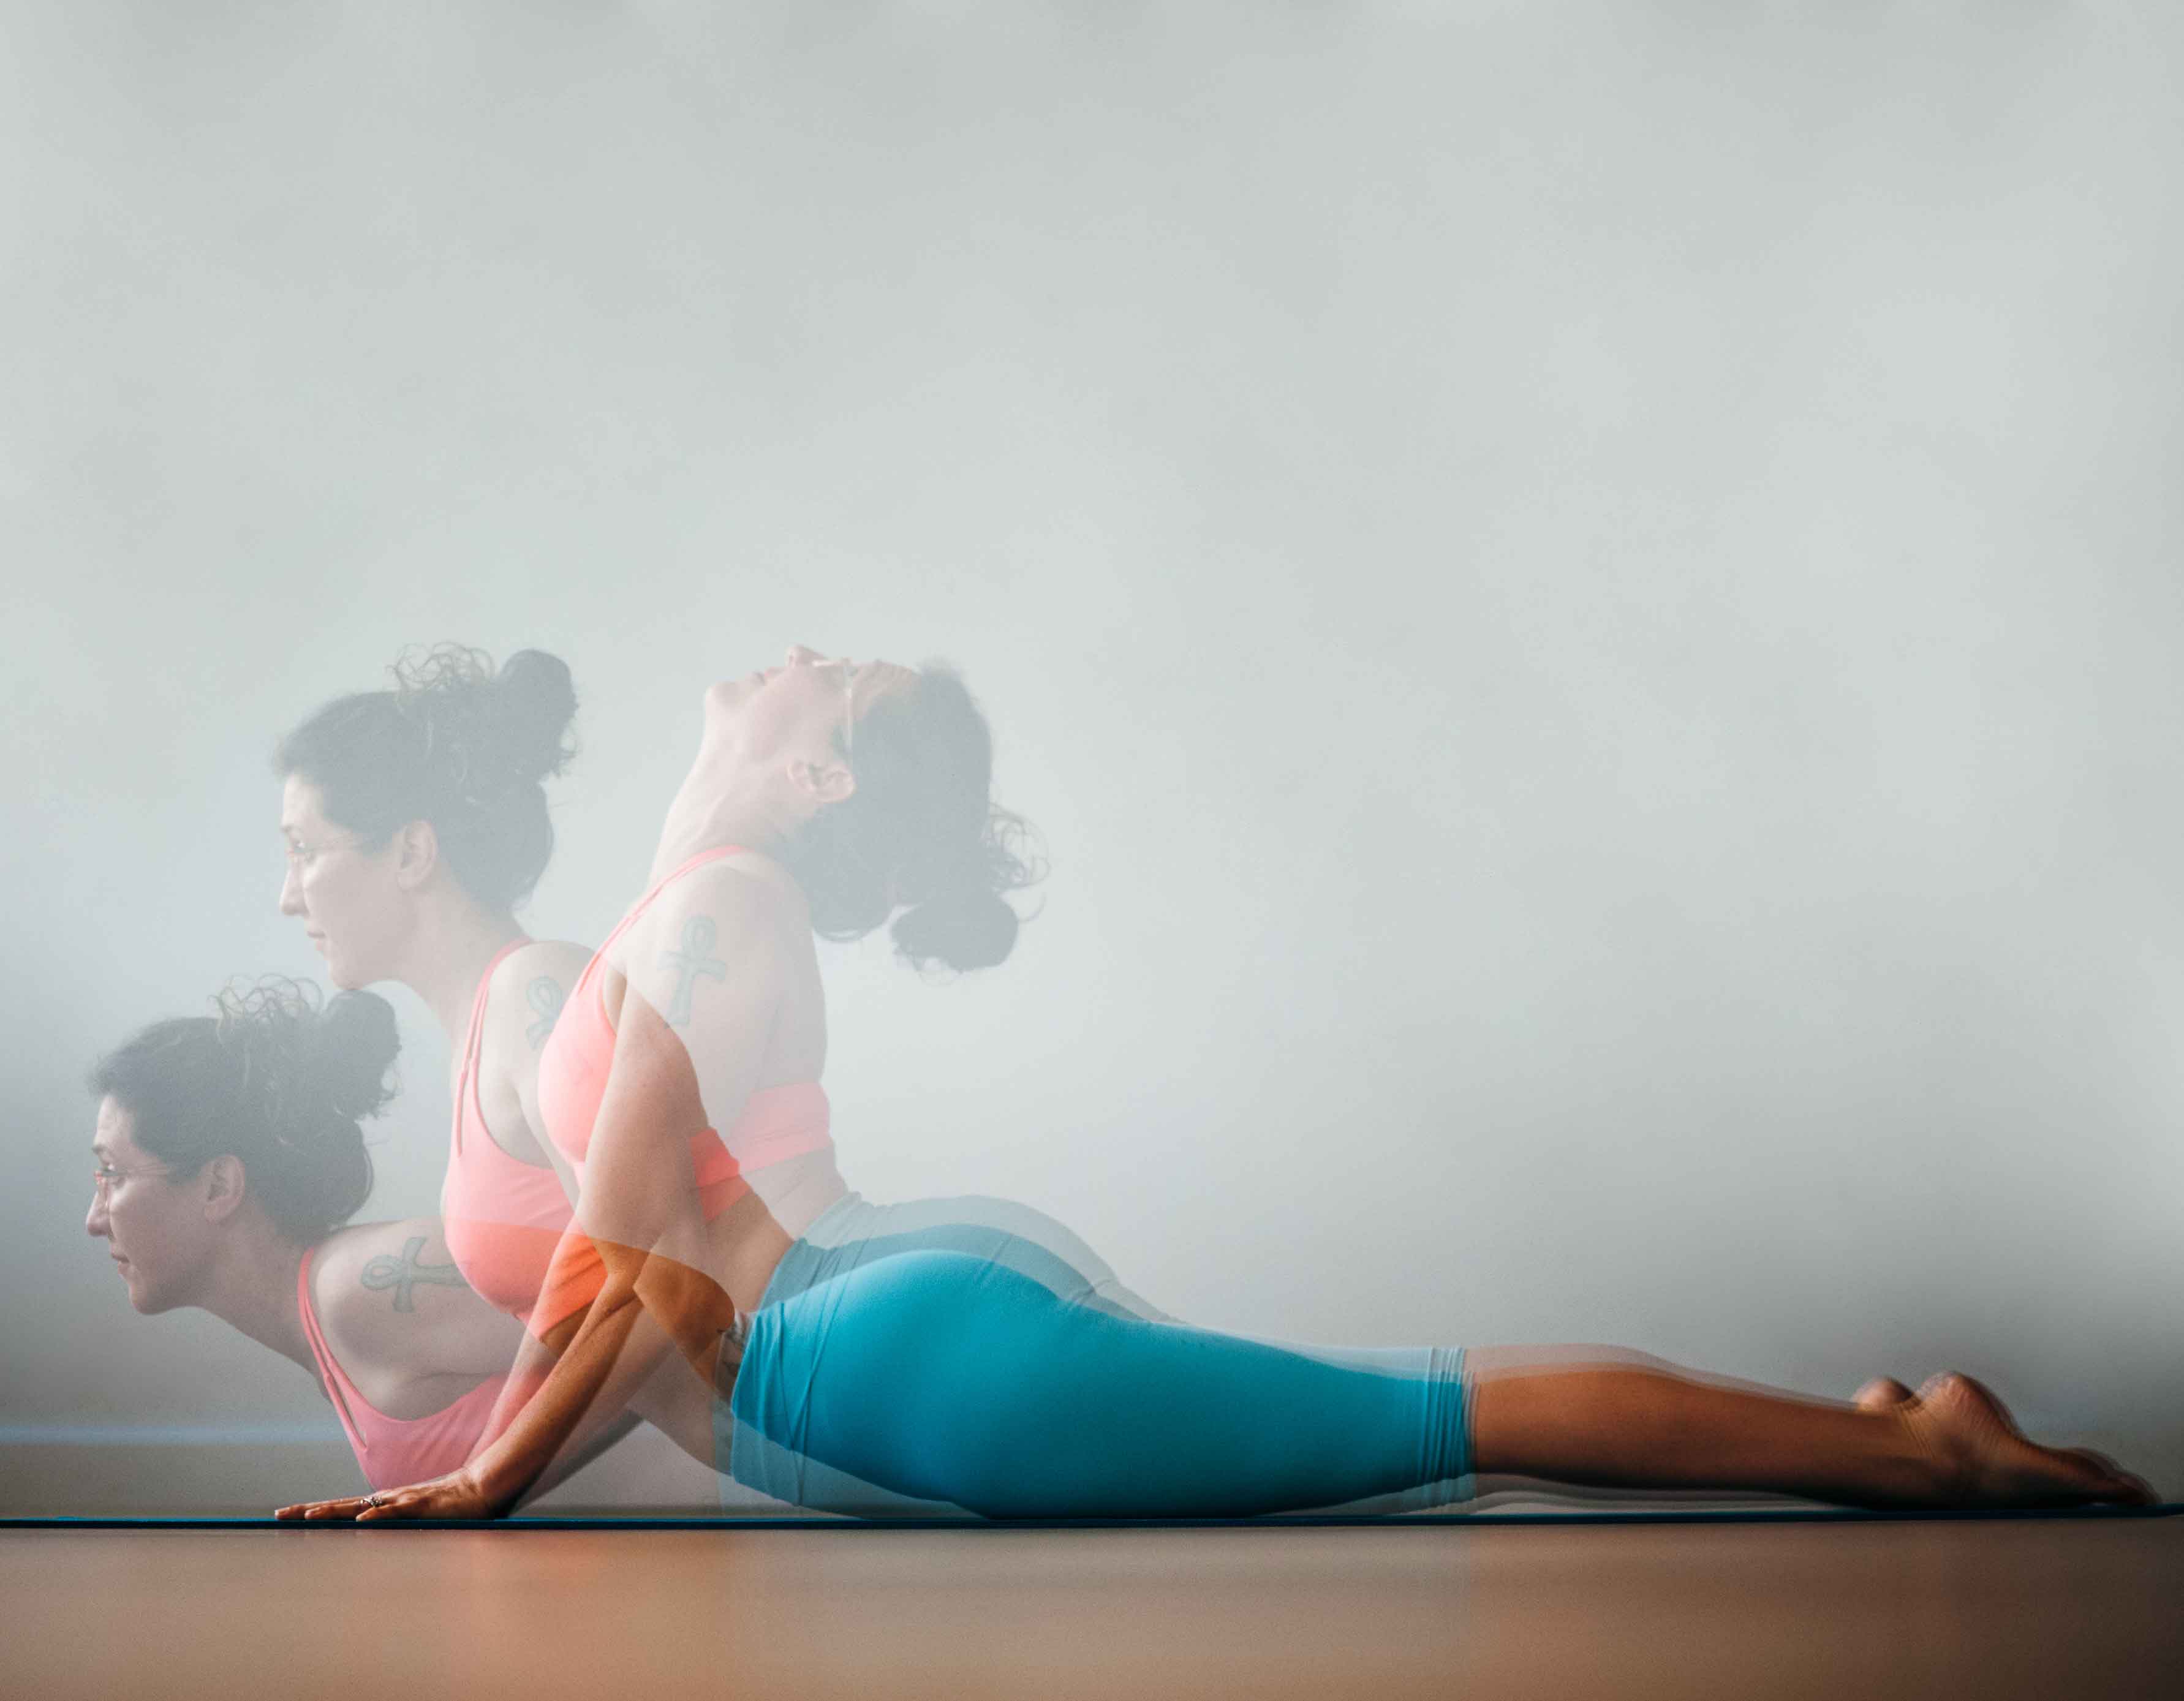 Bhujangasana | Cobra Yoga Pose | Steps | Benefits | Yogic Fitness - YouTube